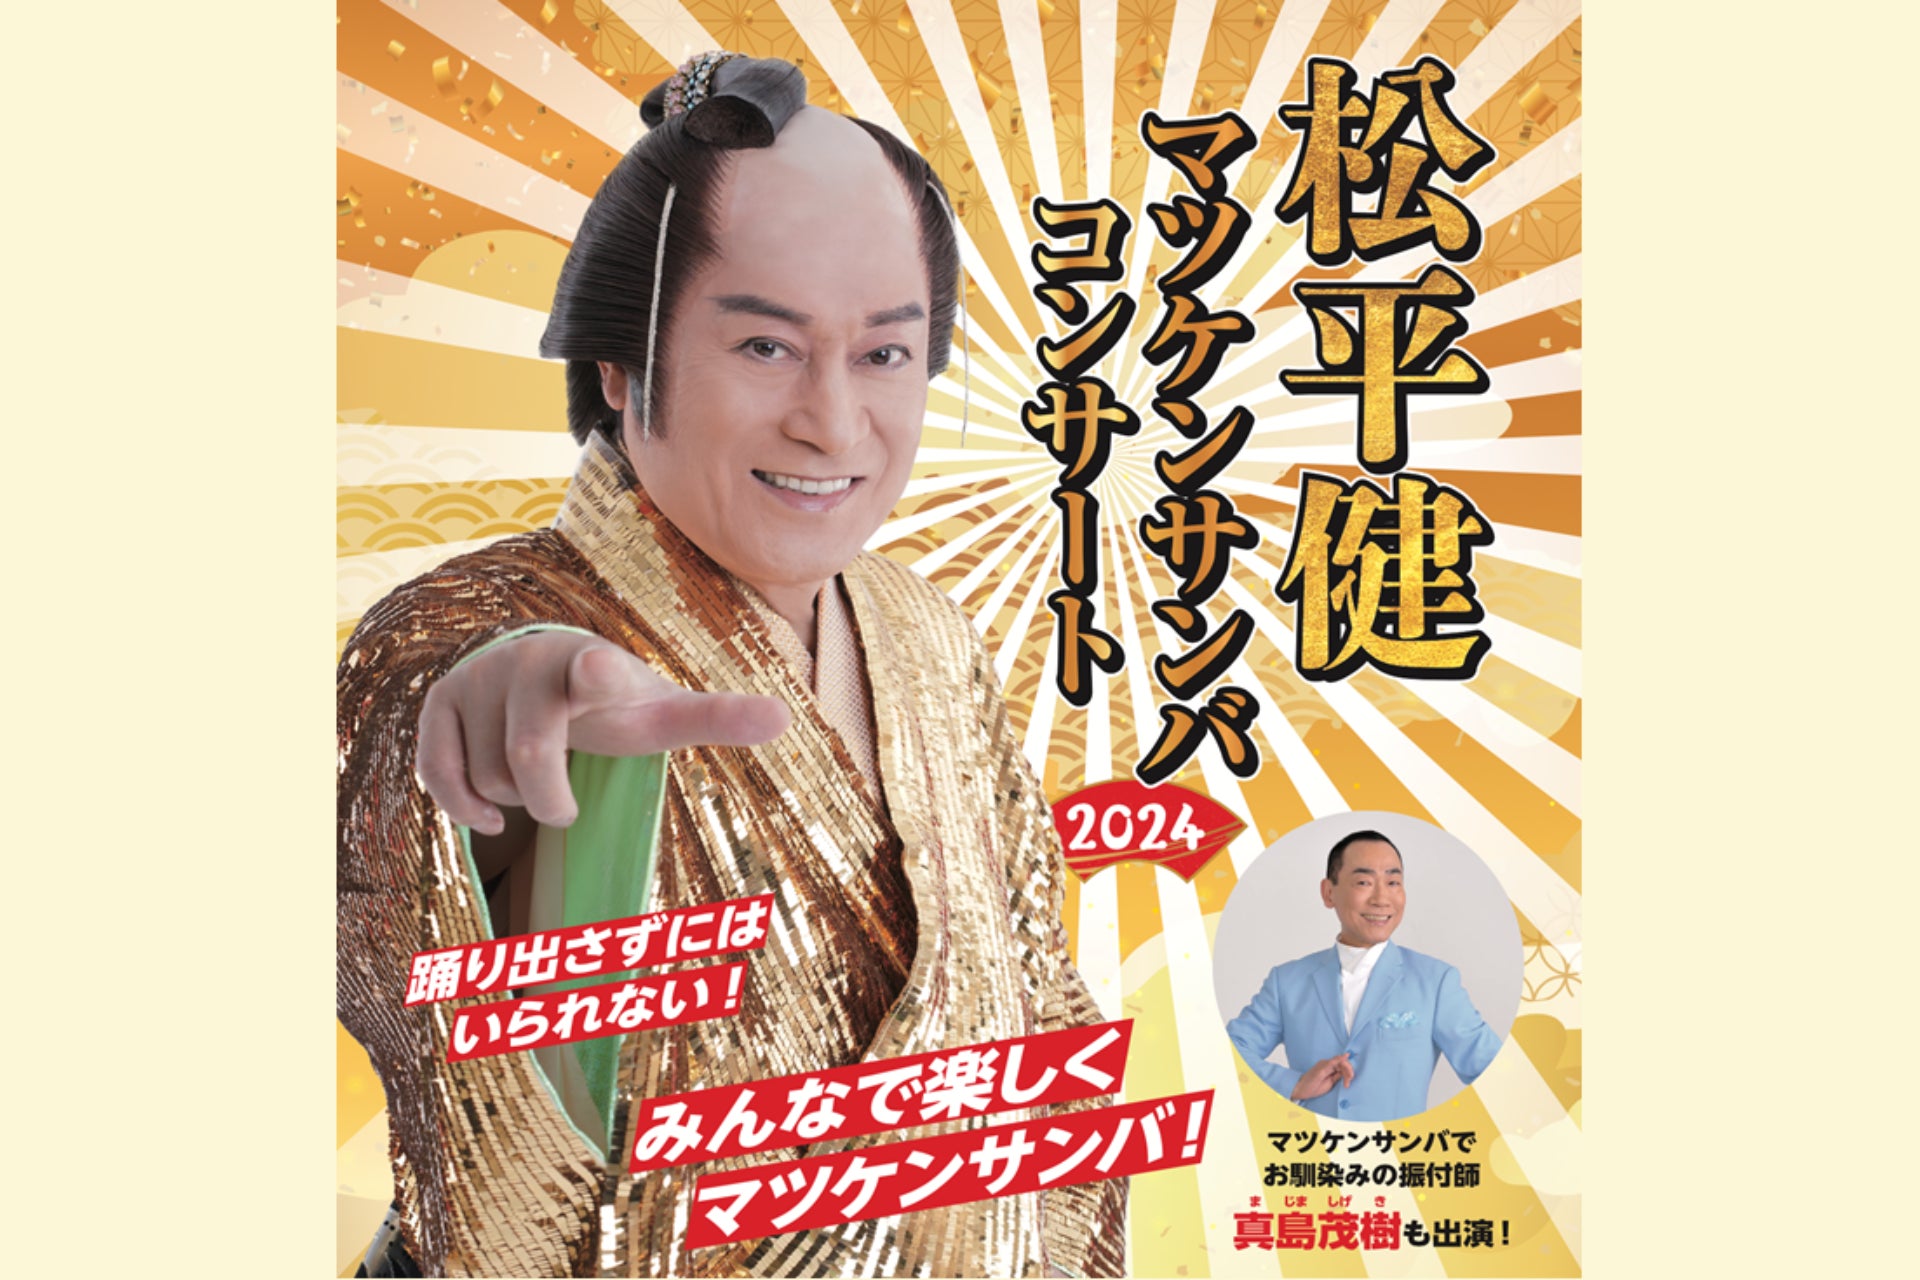 日本オリジナル作品 ミュージカル『イザボー』“最悪の王妃”を演じた主演・望海風斗が語る作品の育み方と役への挑戦